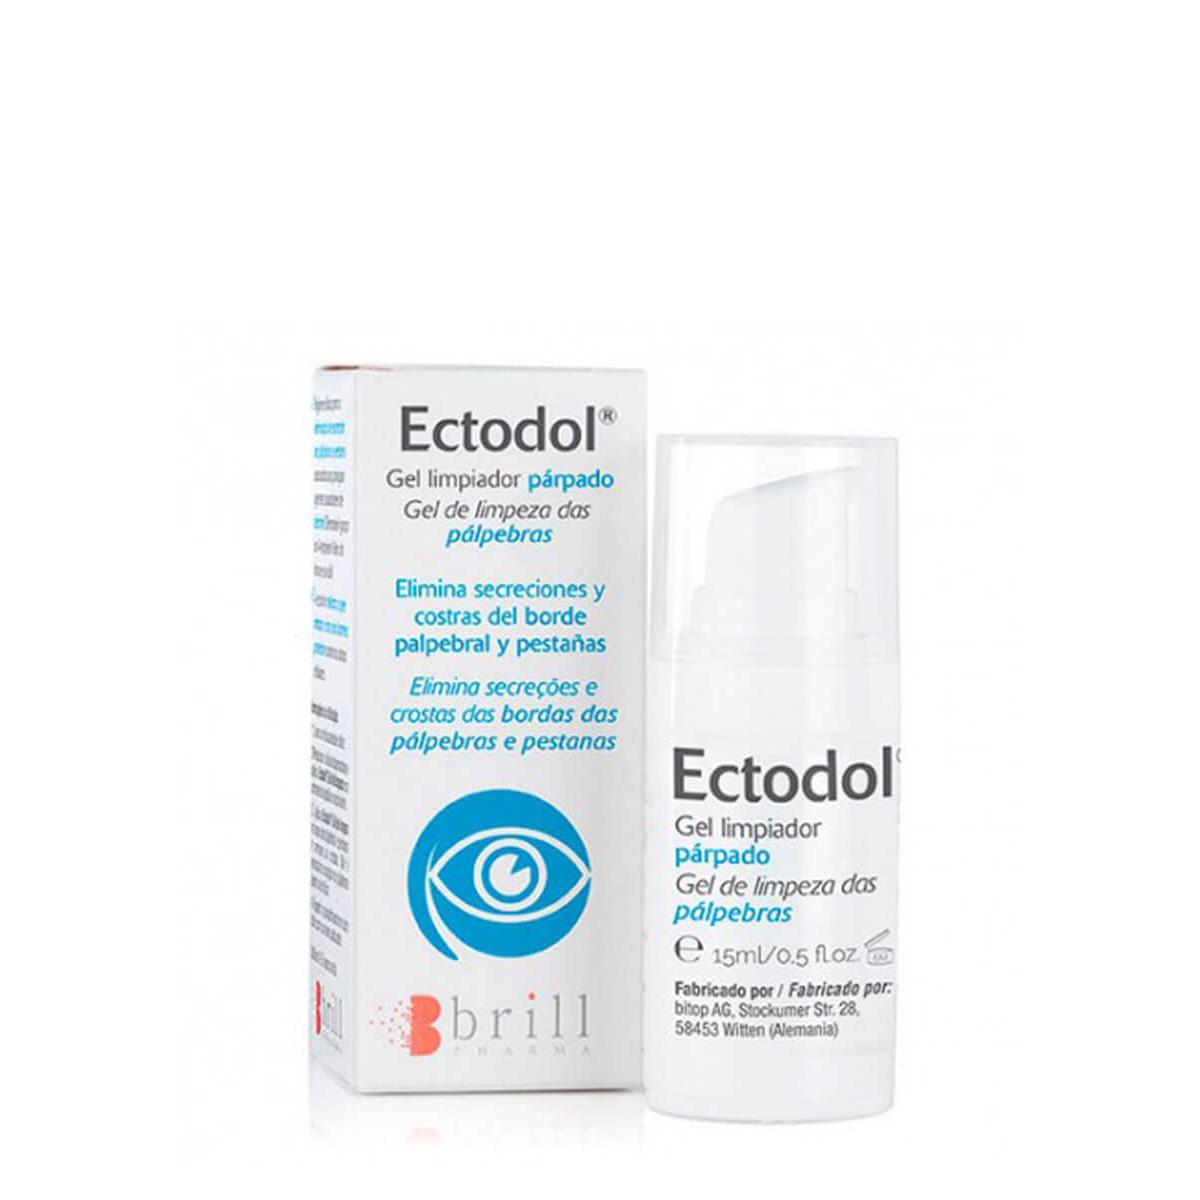 Brill Pharma - Ectodol gel limpiador párpados 15ml